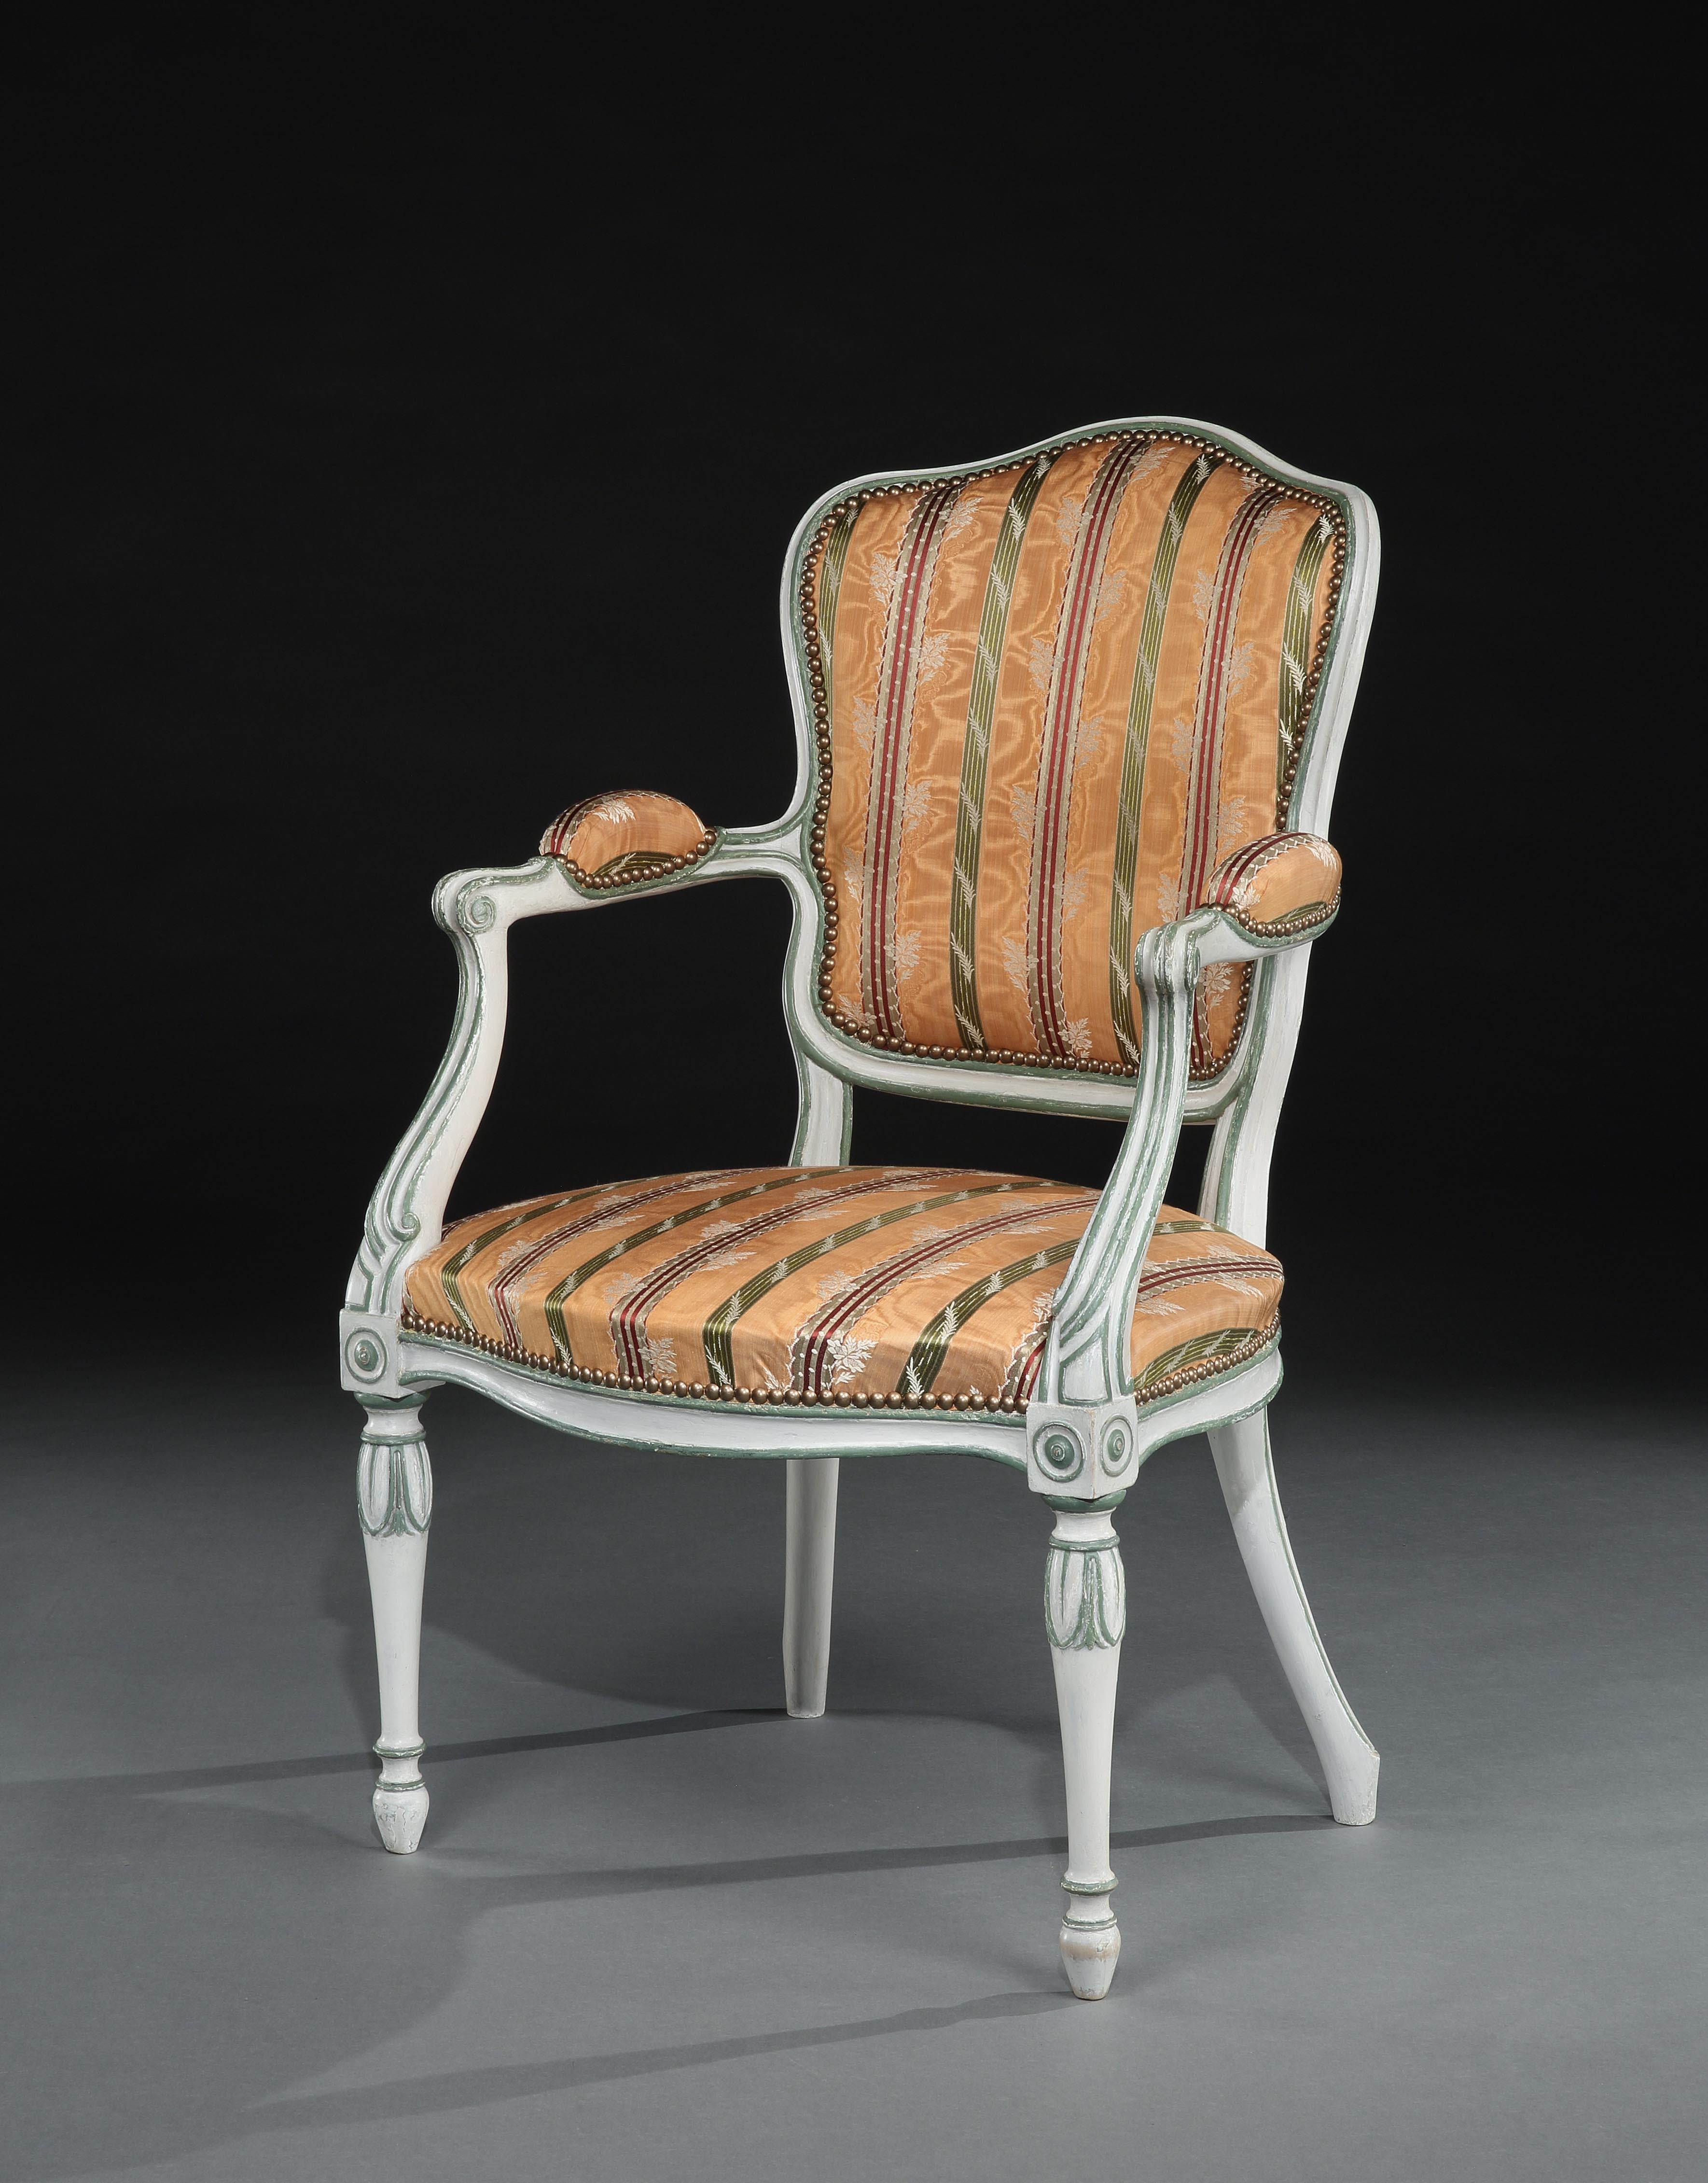 Un beau fauteuil ouvert peint de George III dans le goût français de Hepplewhite. Le dossier en forme de bouclier, l'assise serpentine et les accoudoirs sont rembourrés. Le cadre de la chaise avec des détails cannelés est peint en blanc cassé avec